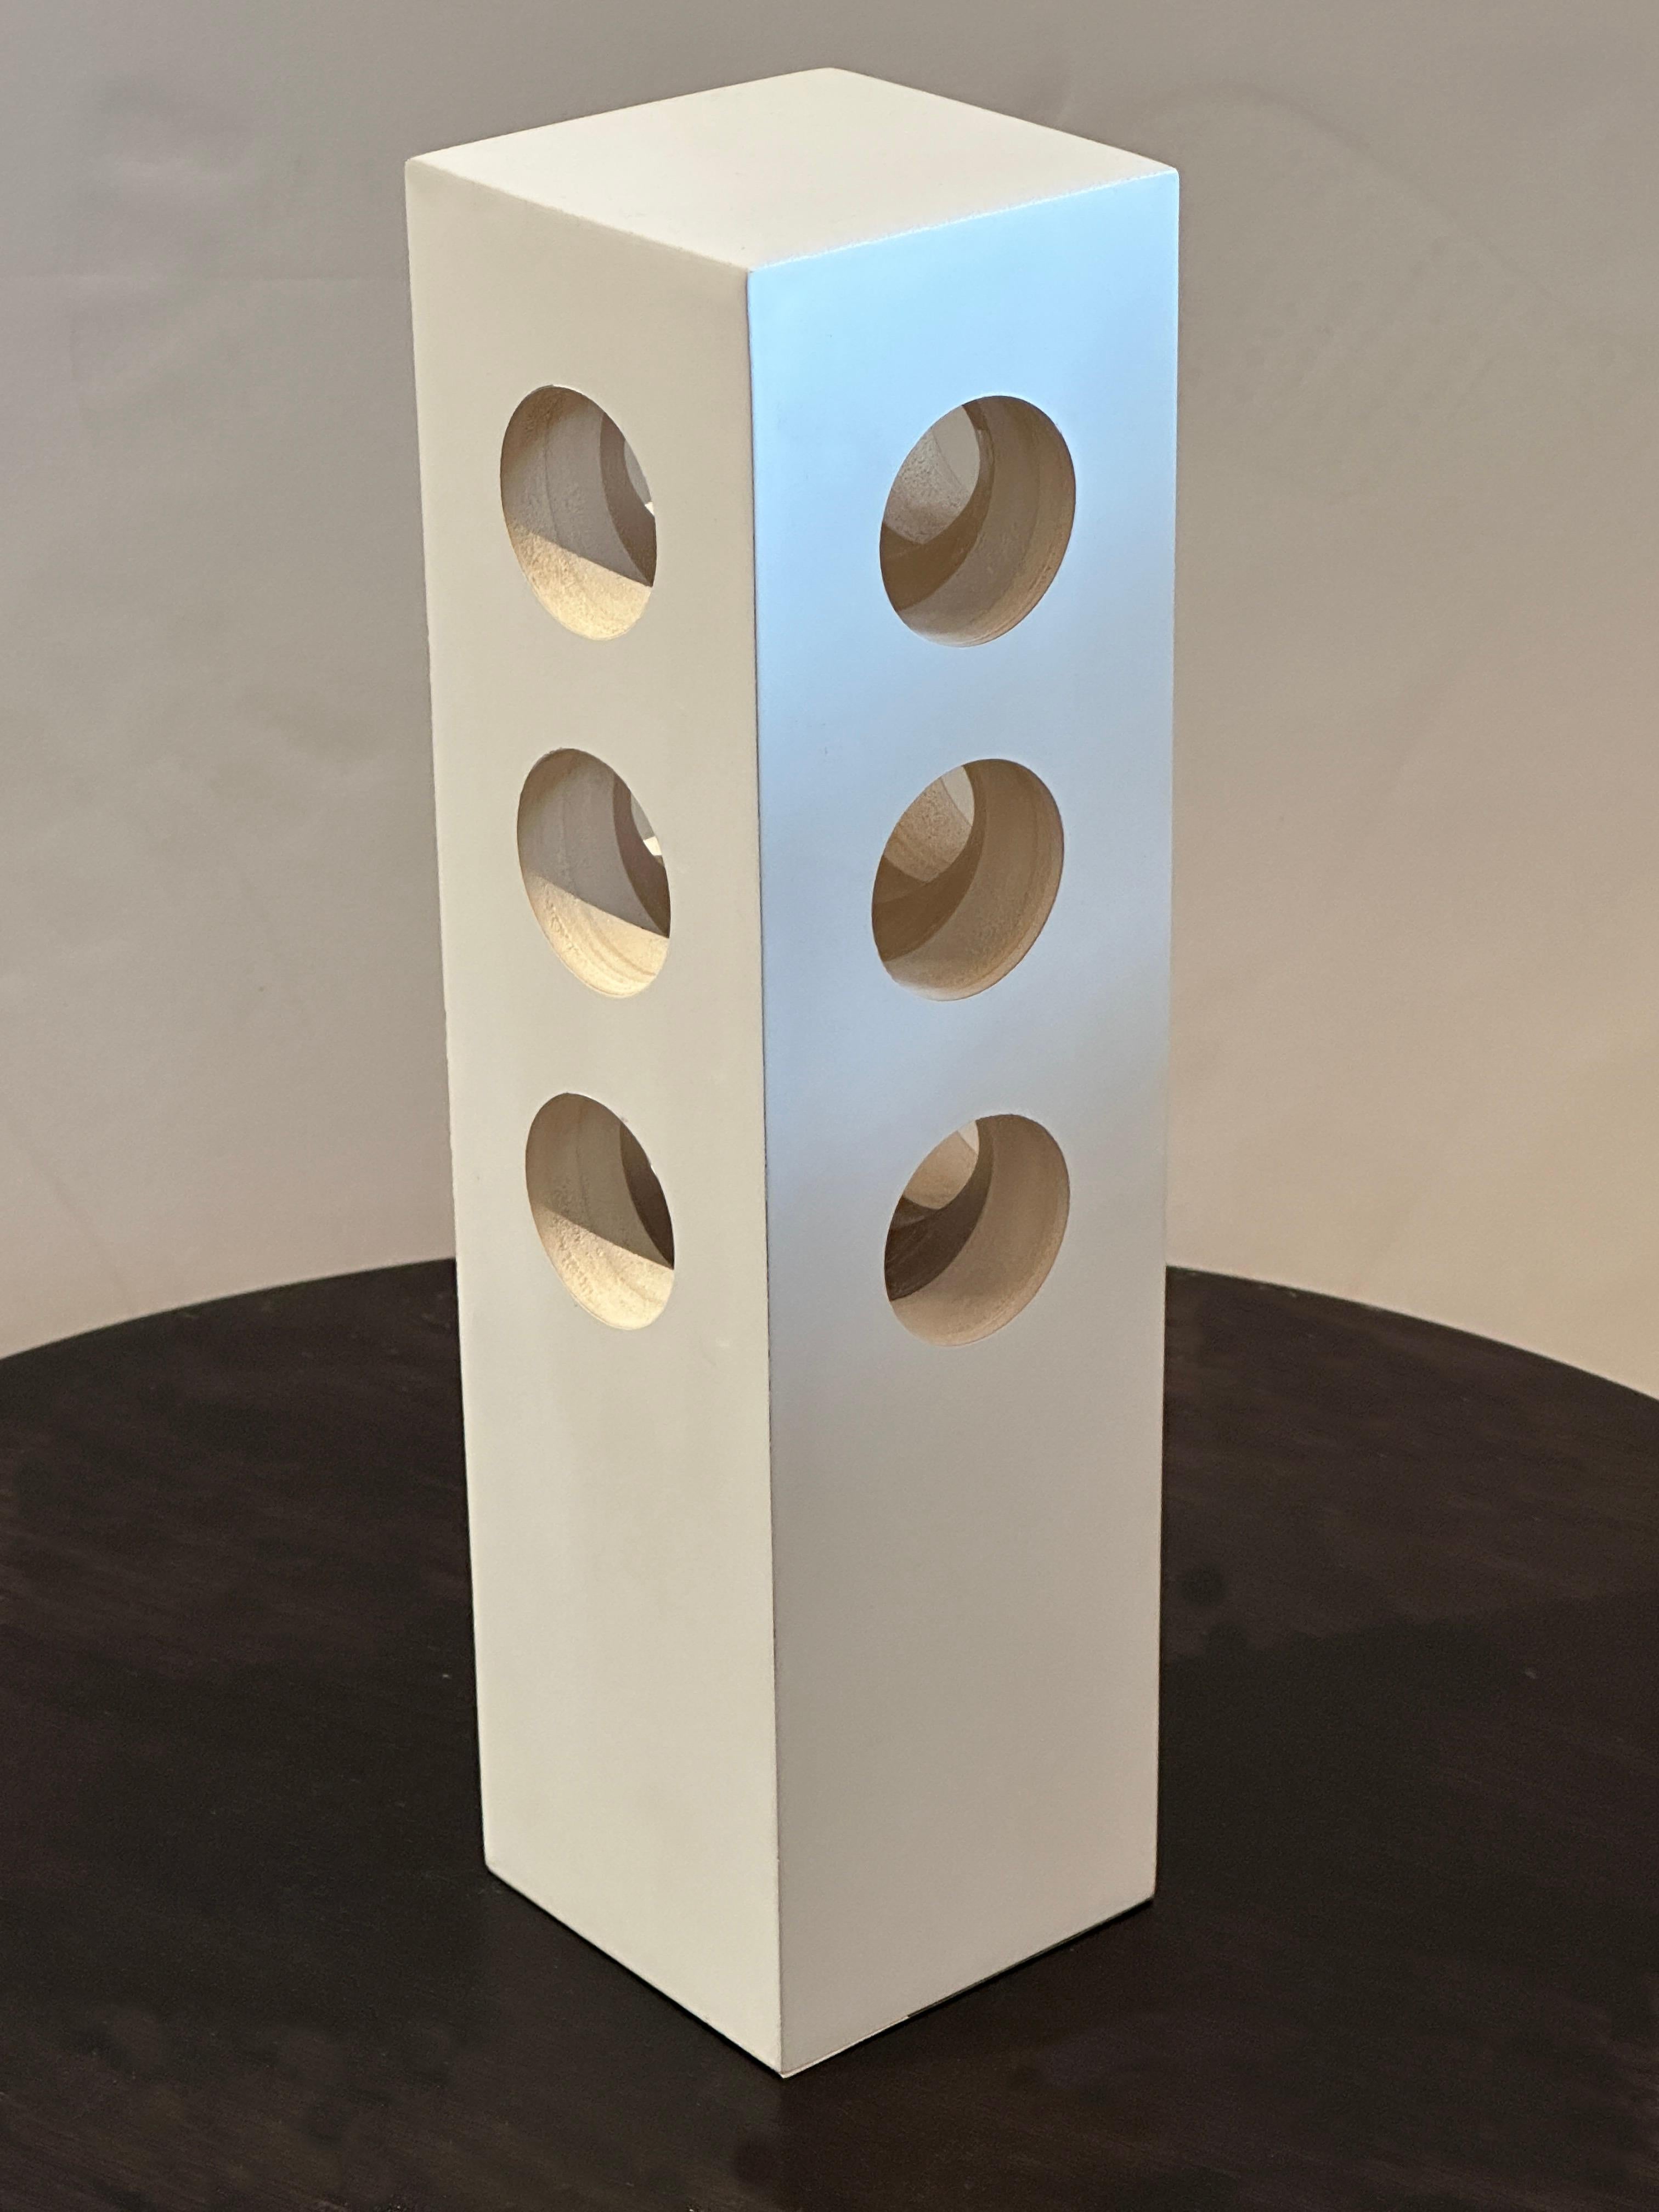 Ce minimalisme moderne  La lampe de table blanche présente trois trous réguliers de chaque côté, laissant passer une lumière douce et apaisante.  La finition en bois blanc laqué lui permet de se fondre parfaitement dans n'importe quelle palette de